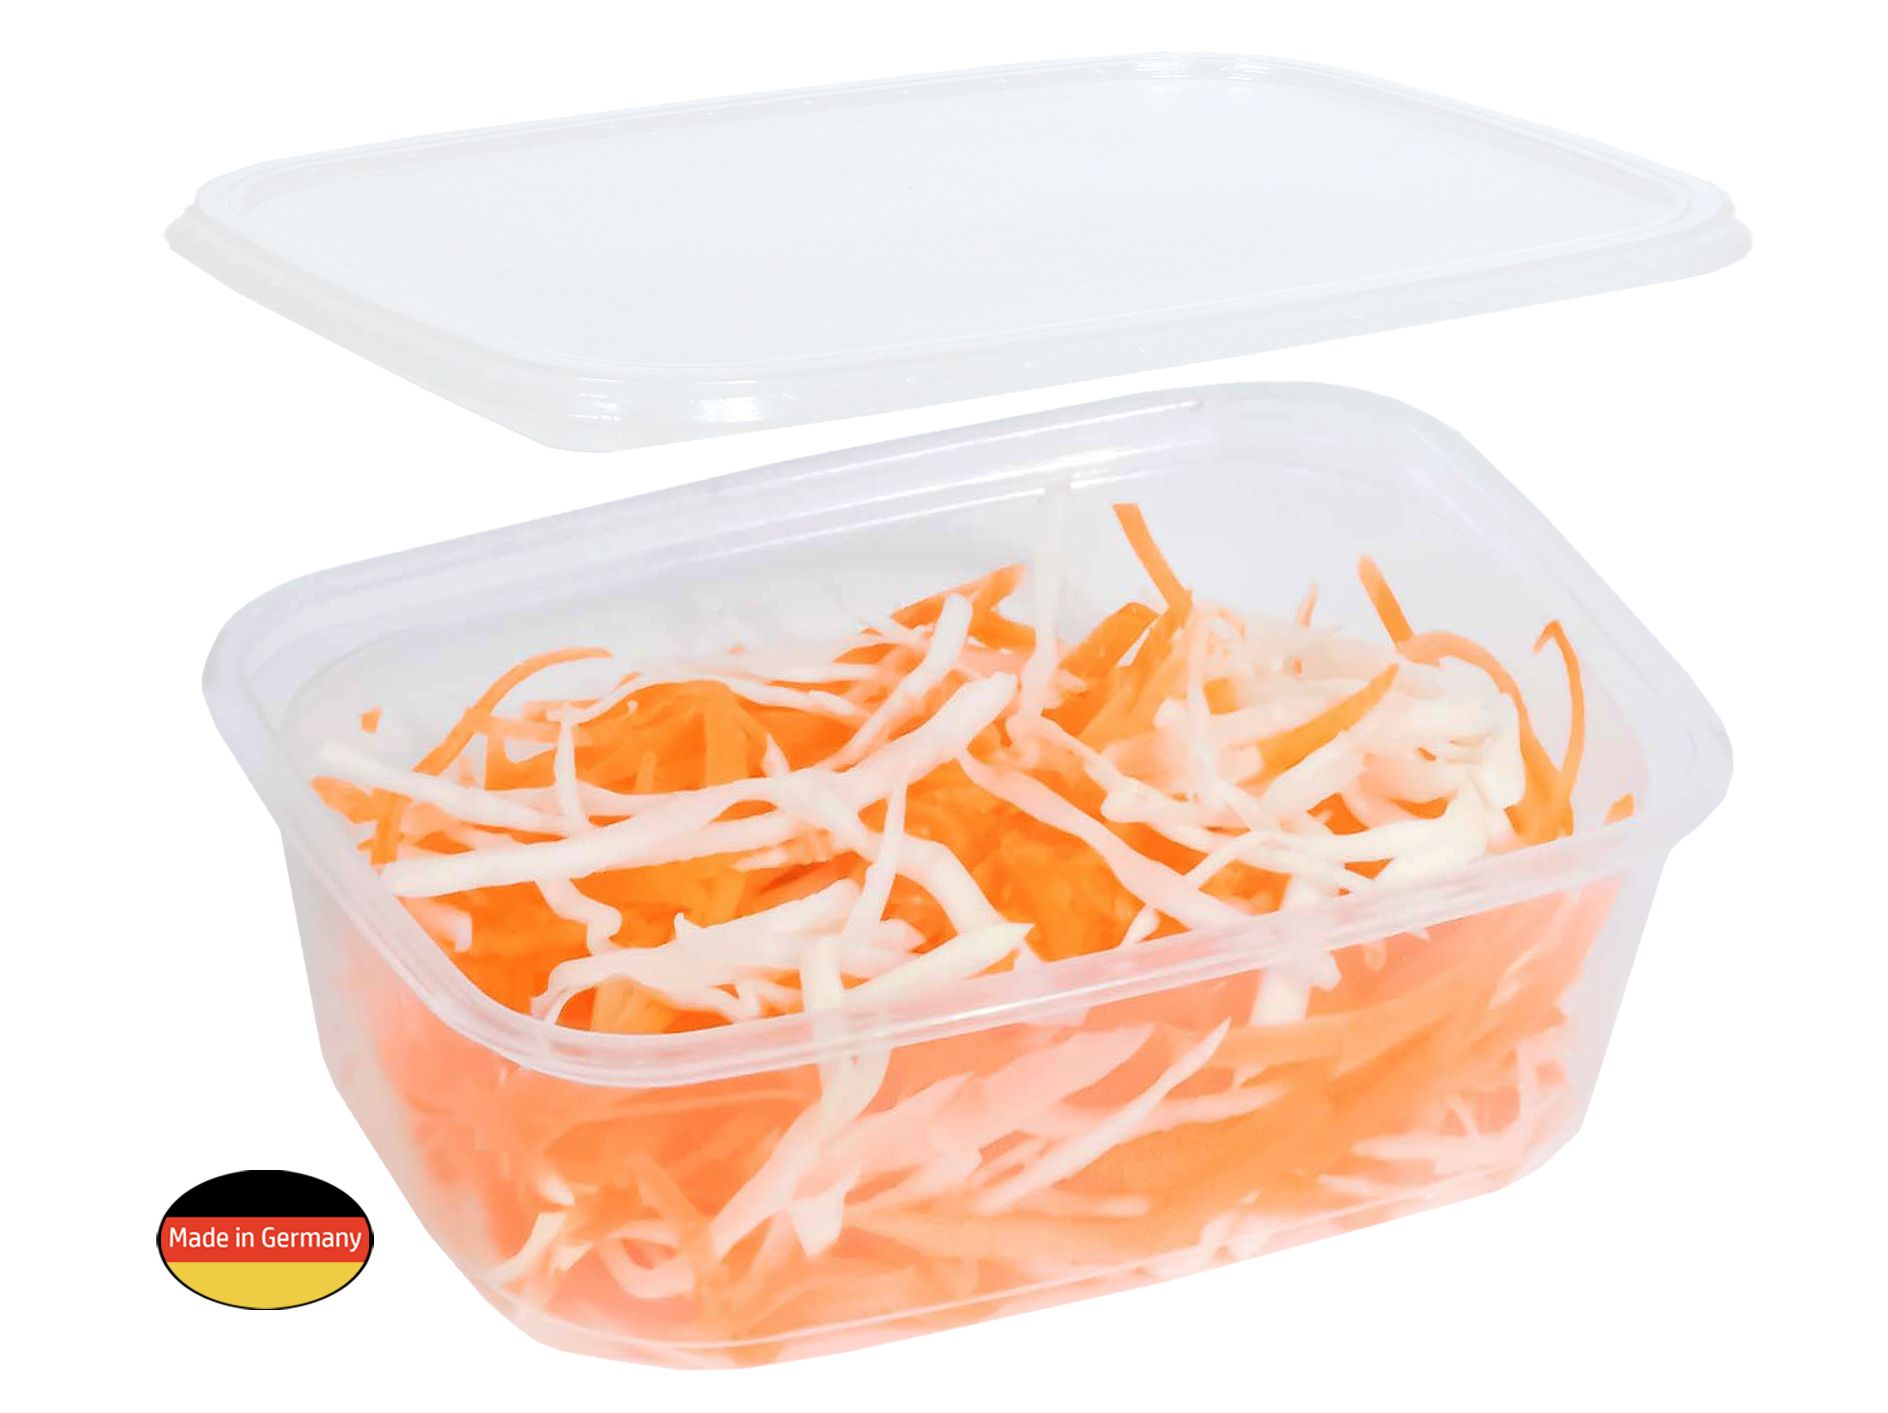 MEHRWEG Feinkost-, Salat- und Verpackungsbecher "eckig" mit Deckel, 200ml, 100 Stück/Packung